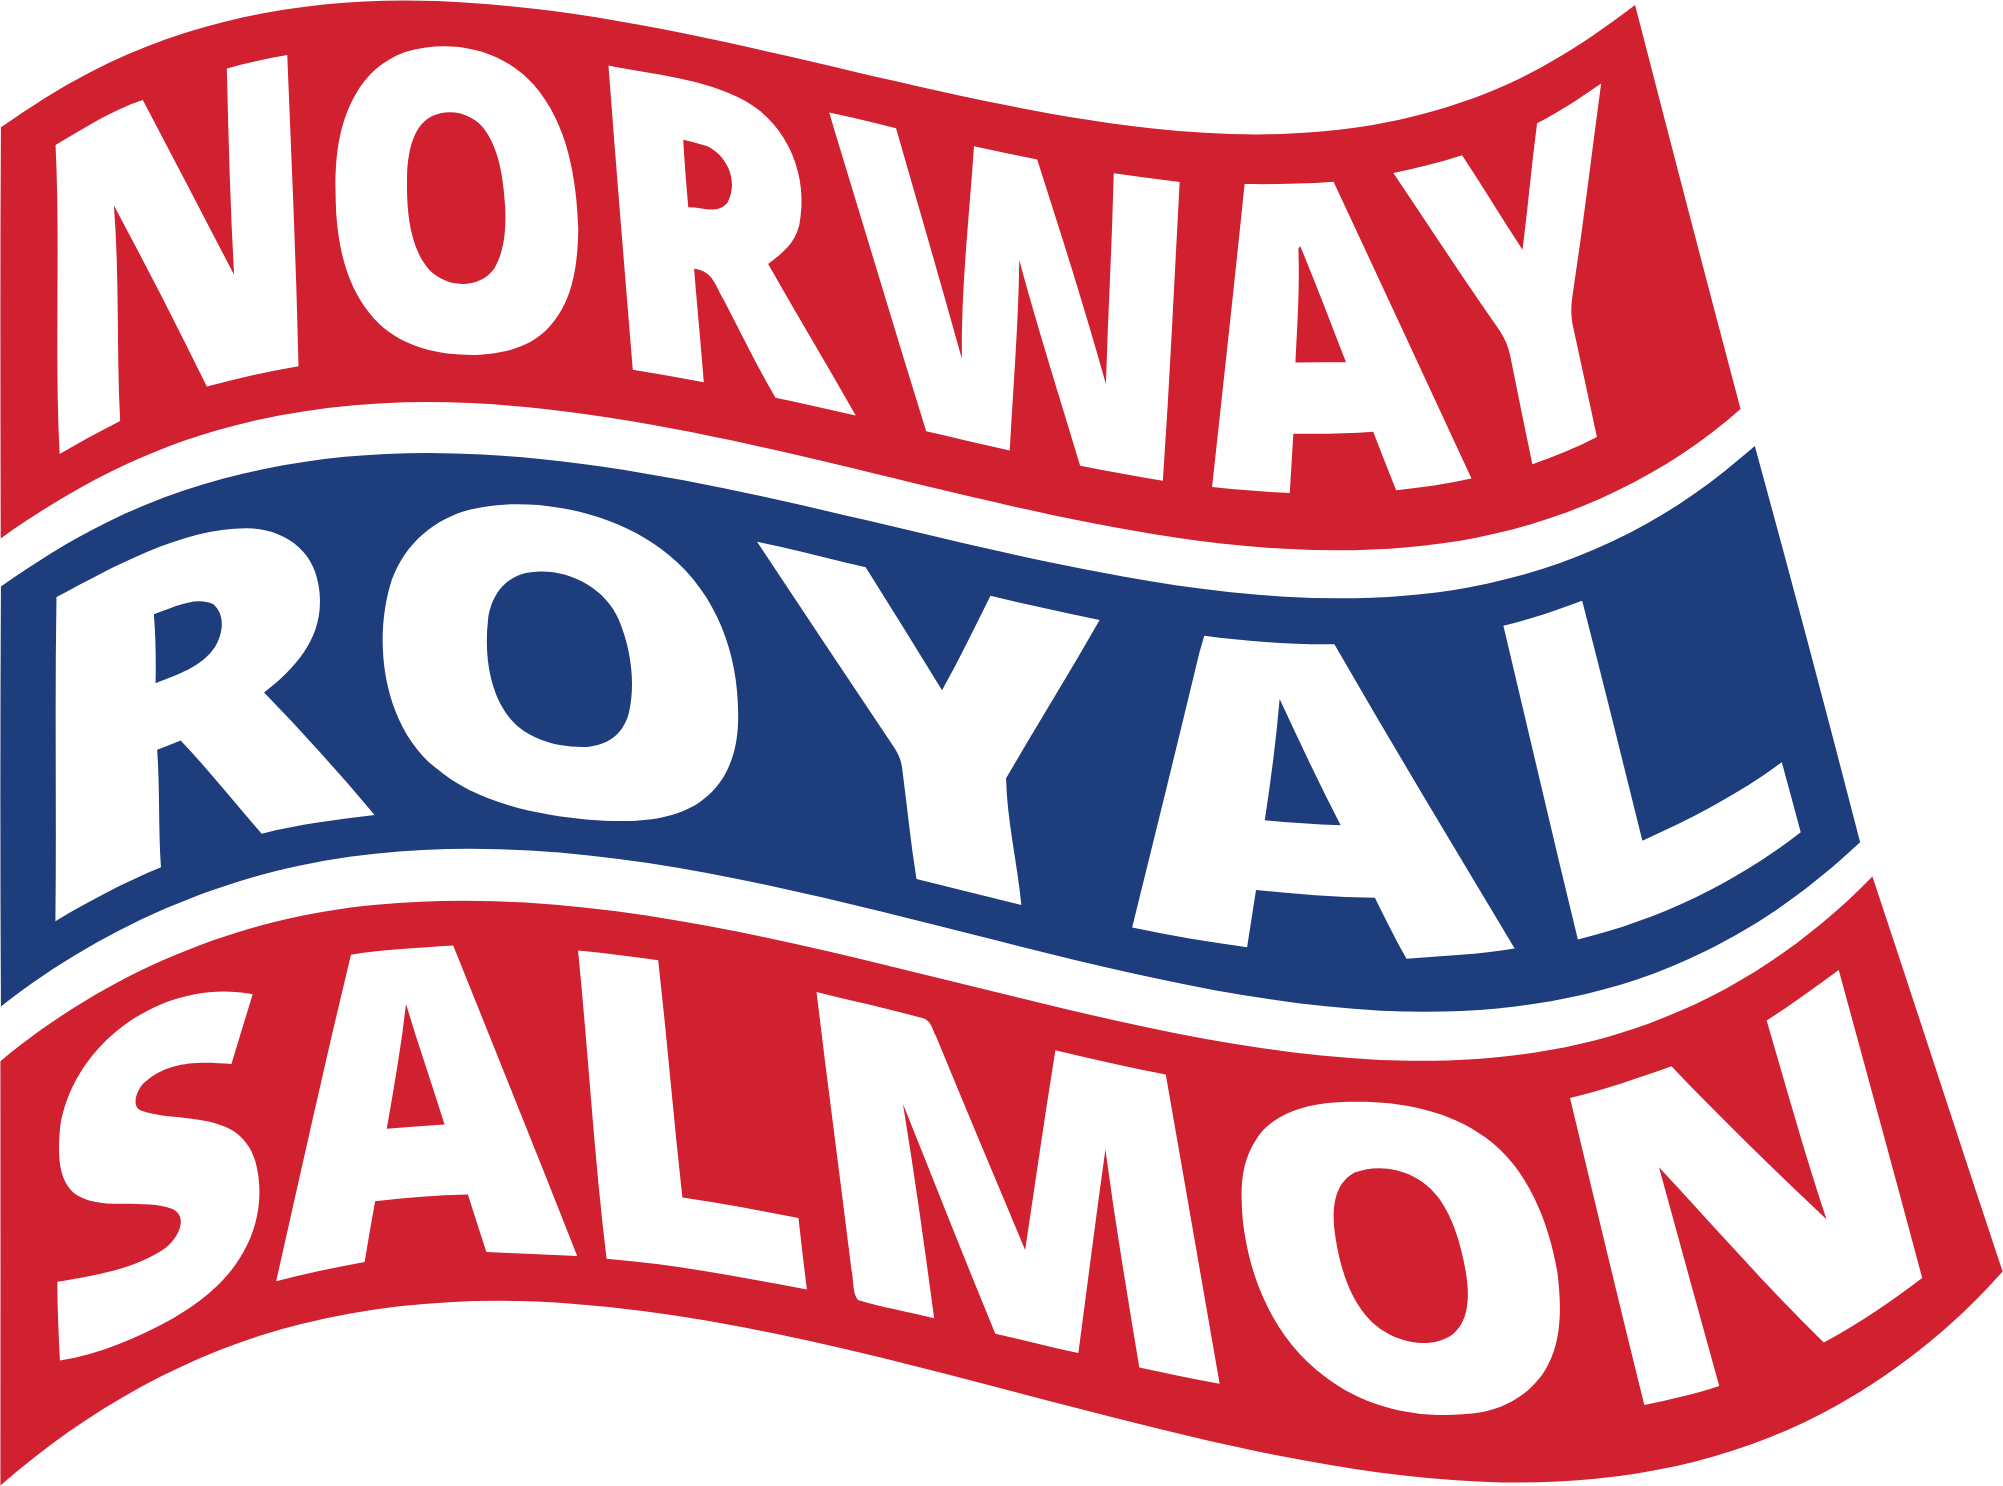 Norway Royal Salmon
 logo (transparent PNG)